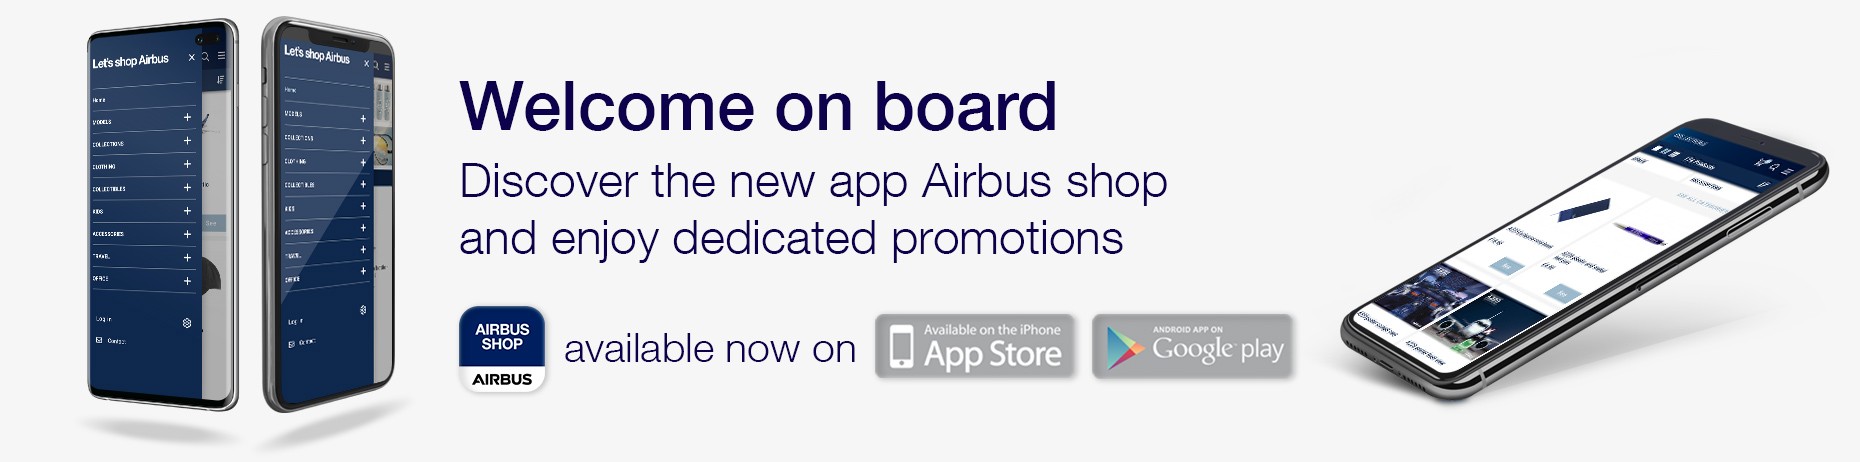 Mobile App. AIRBUS SHOP